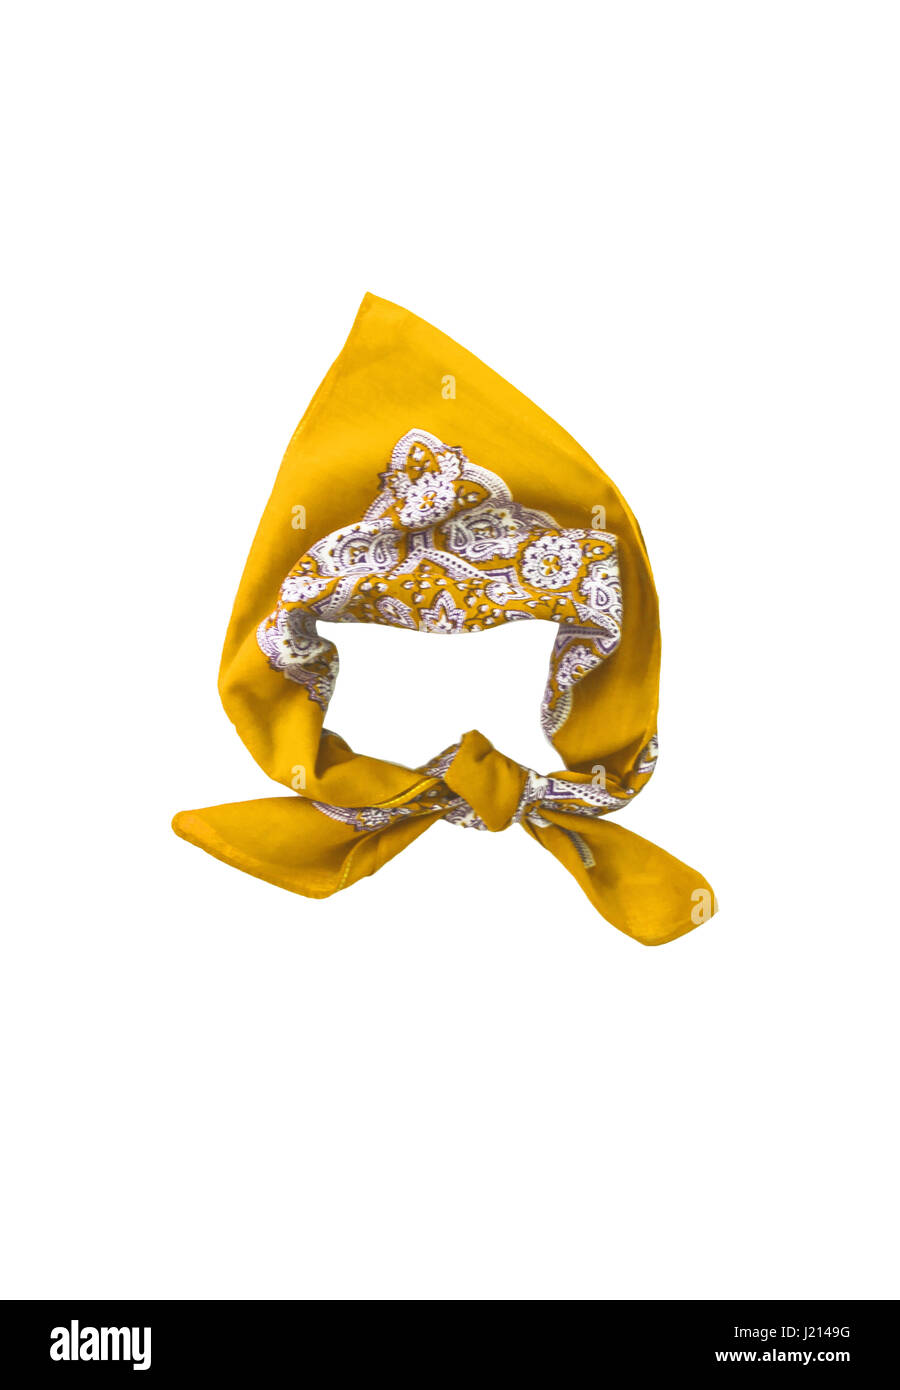 Gelbes Halstuch Bandana mit einem Muster, isoliert Stockfotografie - Alamy